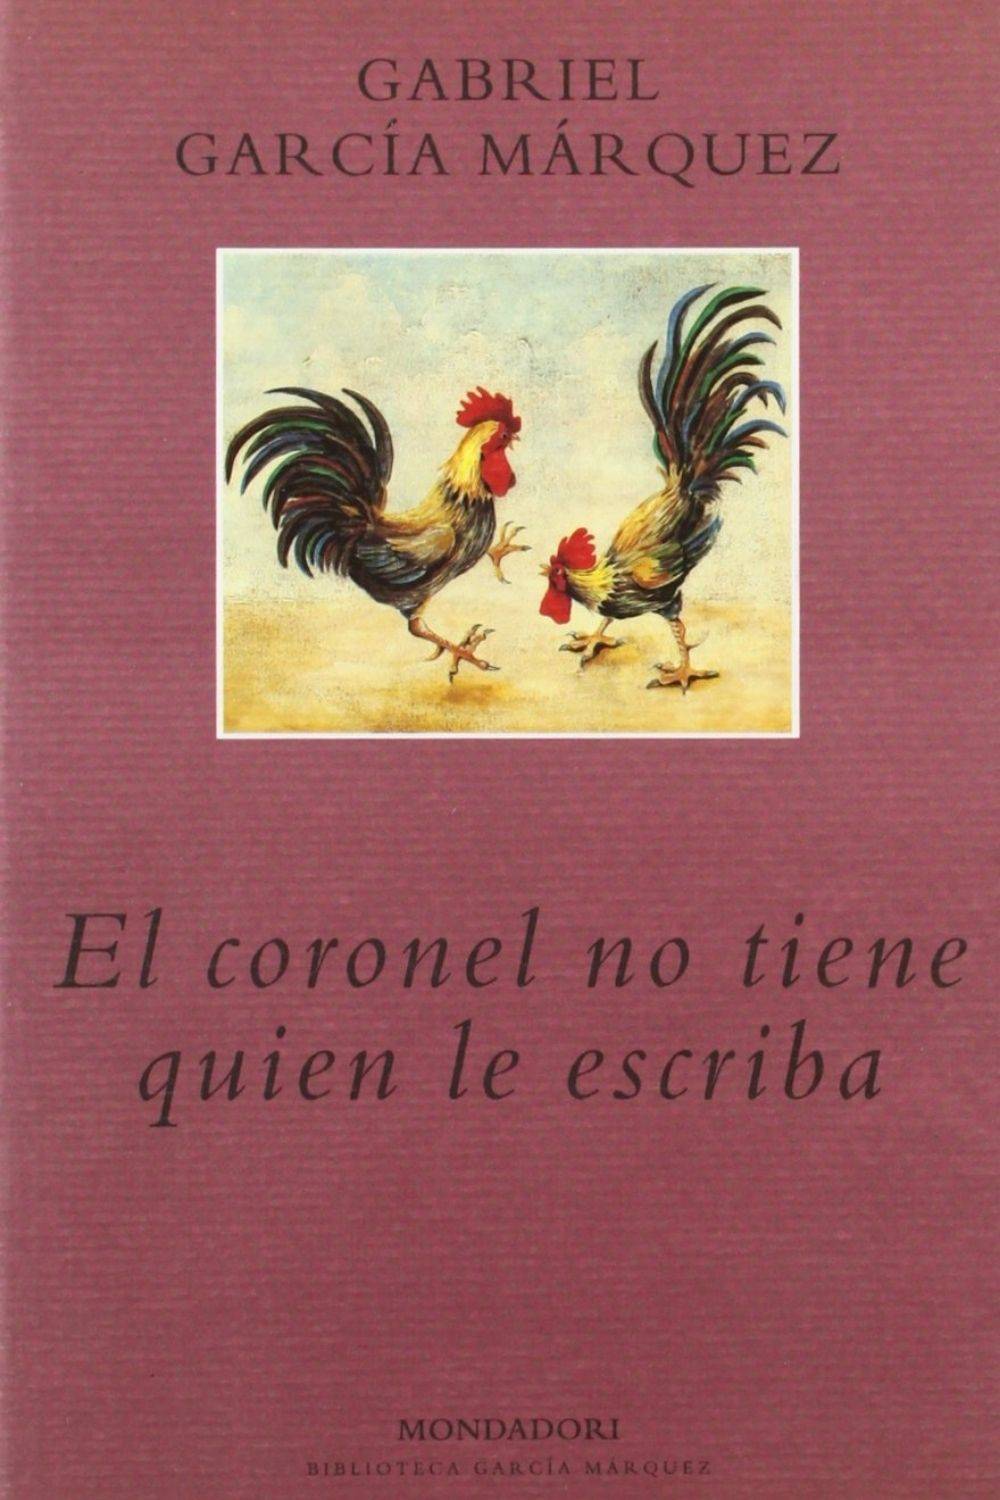 ‘El coronel no tiene quien le escriba’ de Gabriel García Márquez